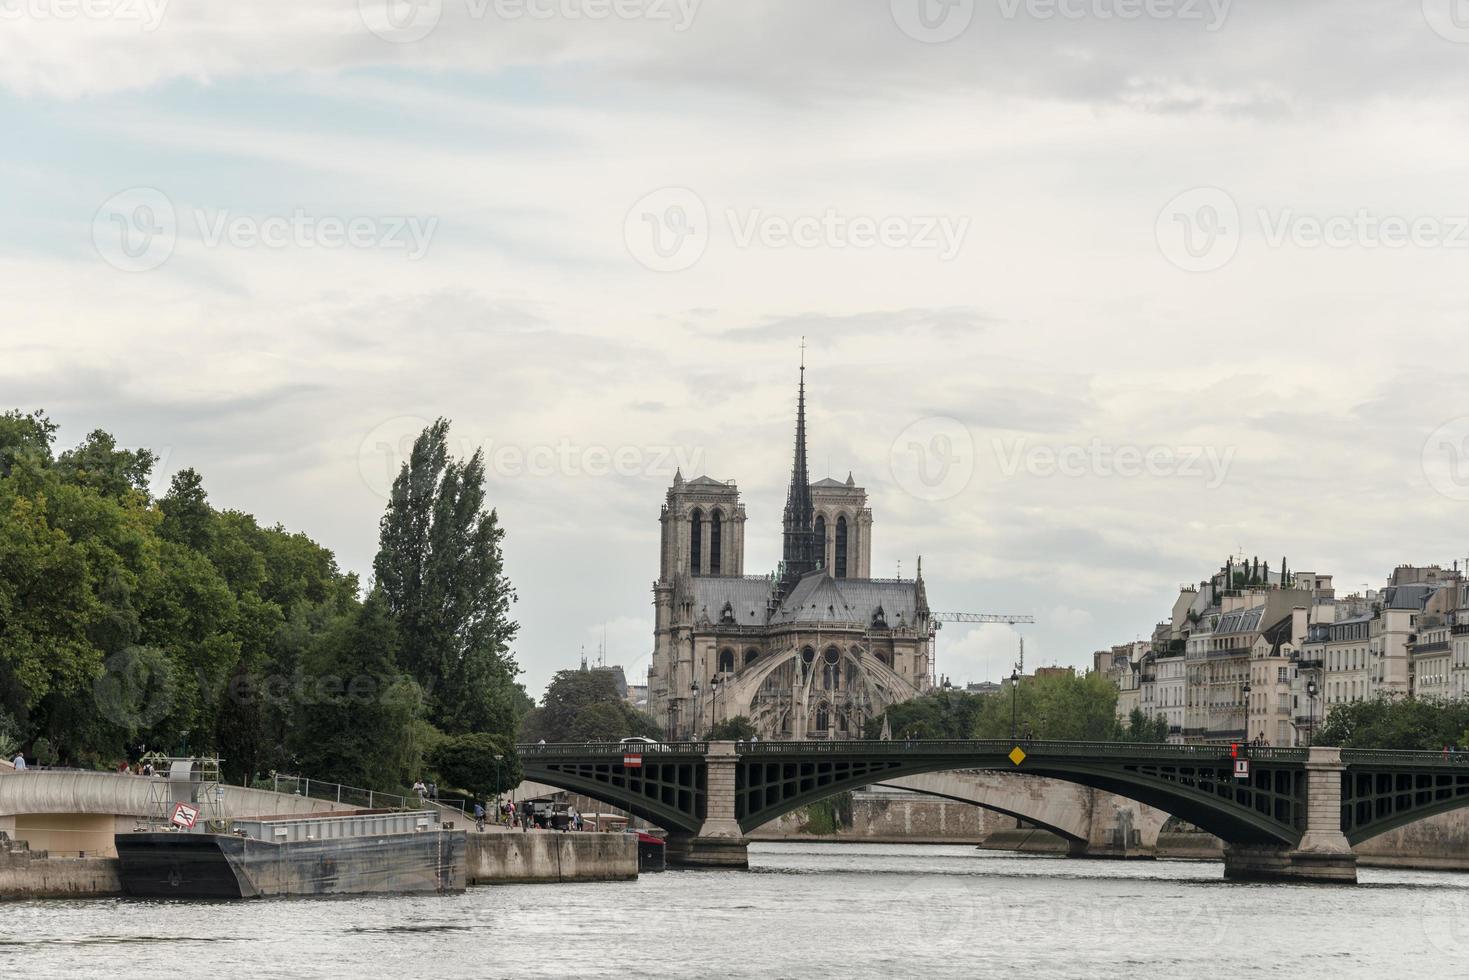 Paris photo